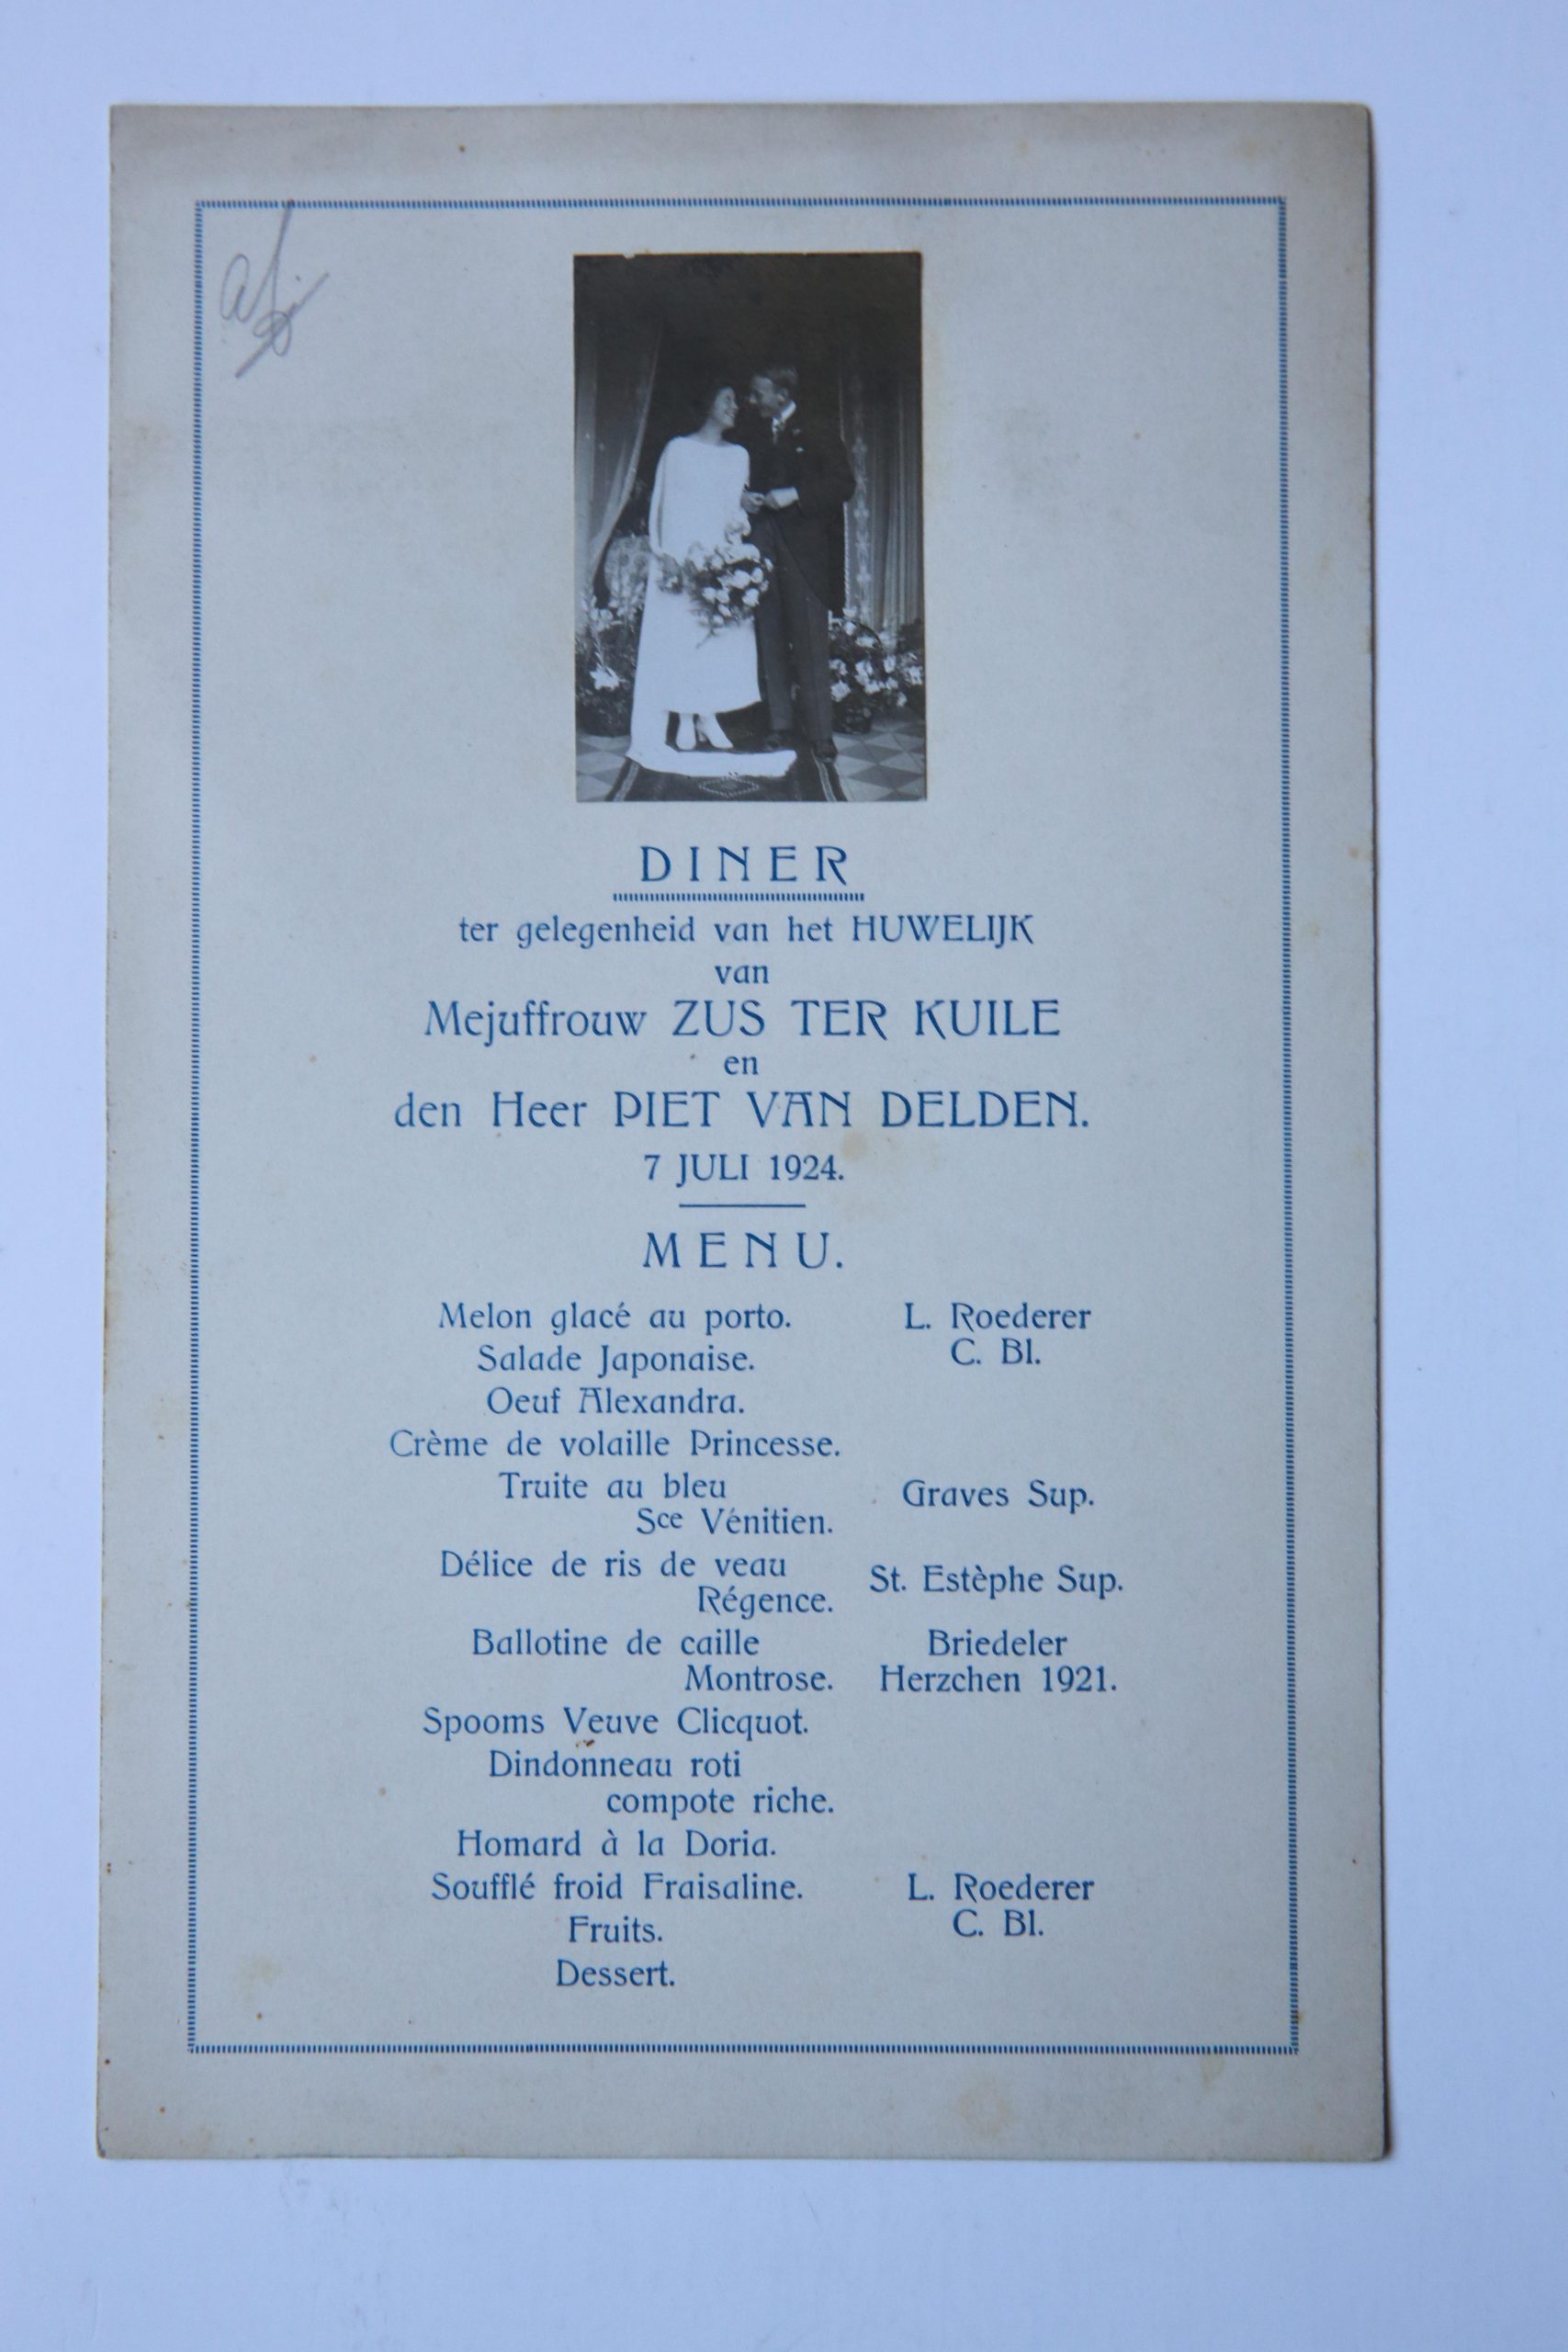  - Diner ter gelegenheid van het huwelijk van mej. Zus Ter Kuile en de heer Piet Van Delden, 7 Juli 1924. 8: [1], met foto van bruidspaar.